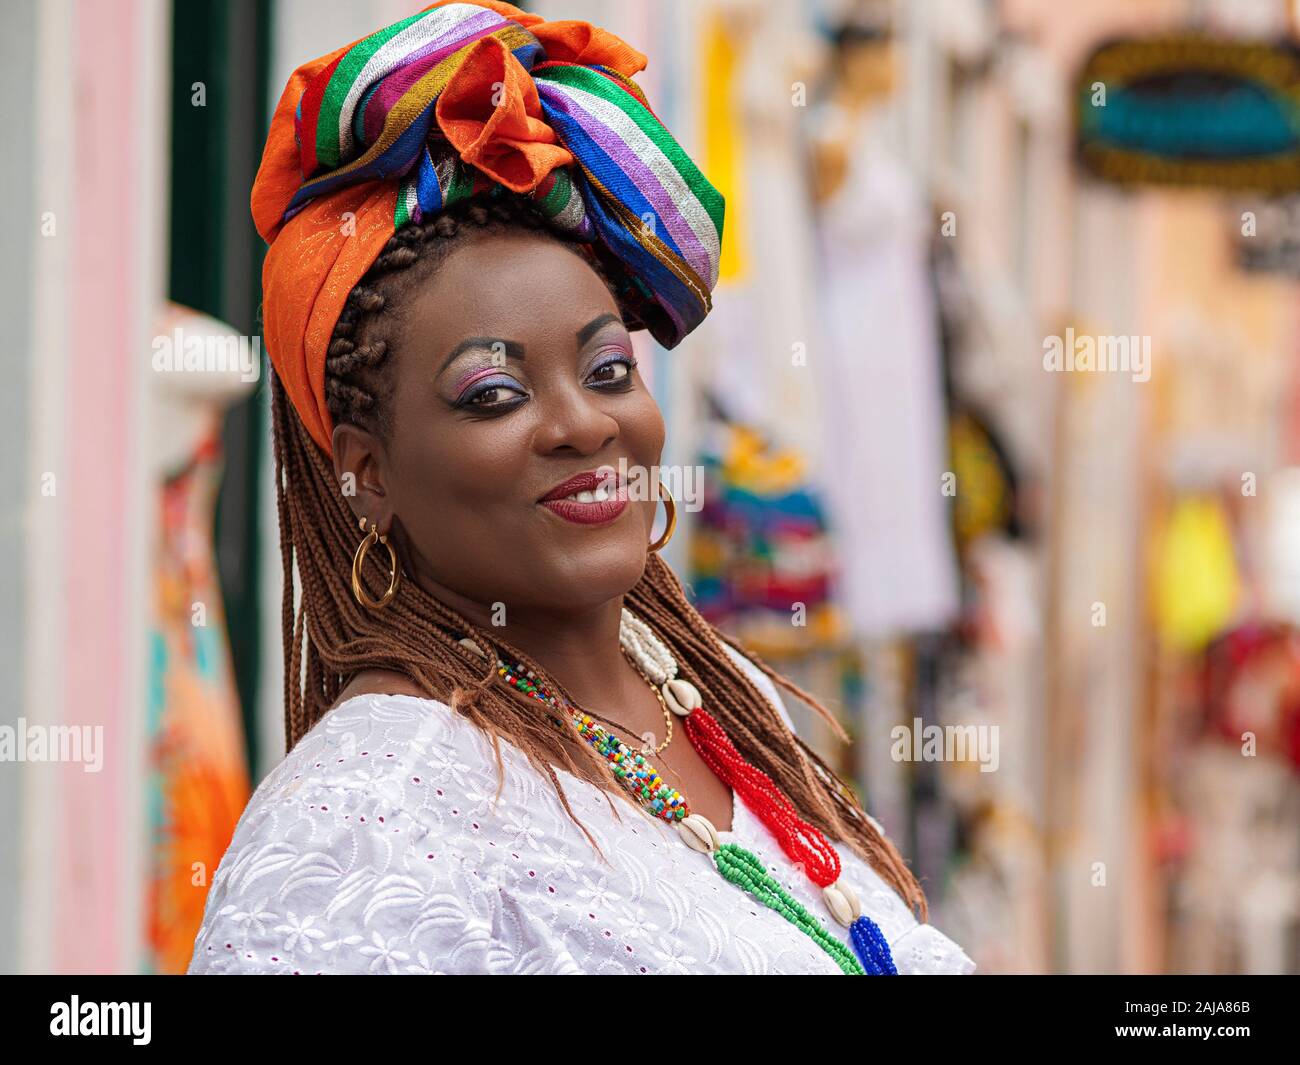 Gerne brasilianische Frau afrikanischer Abstammung in der traditionellen Baiana Kostüme im historischen Zentrum von Salvador da Bahia, Brasilien gekleidet. Stockfoto